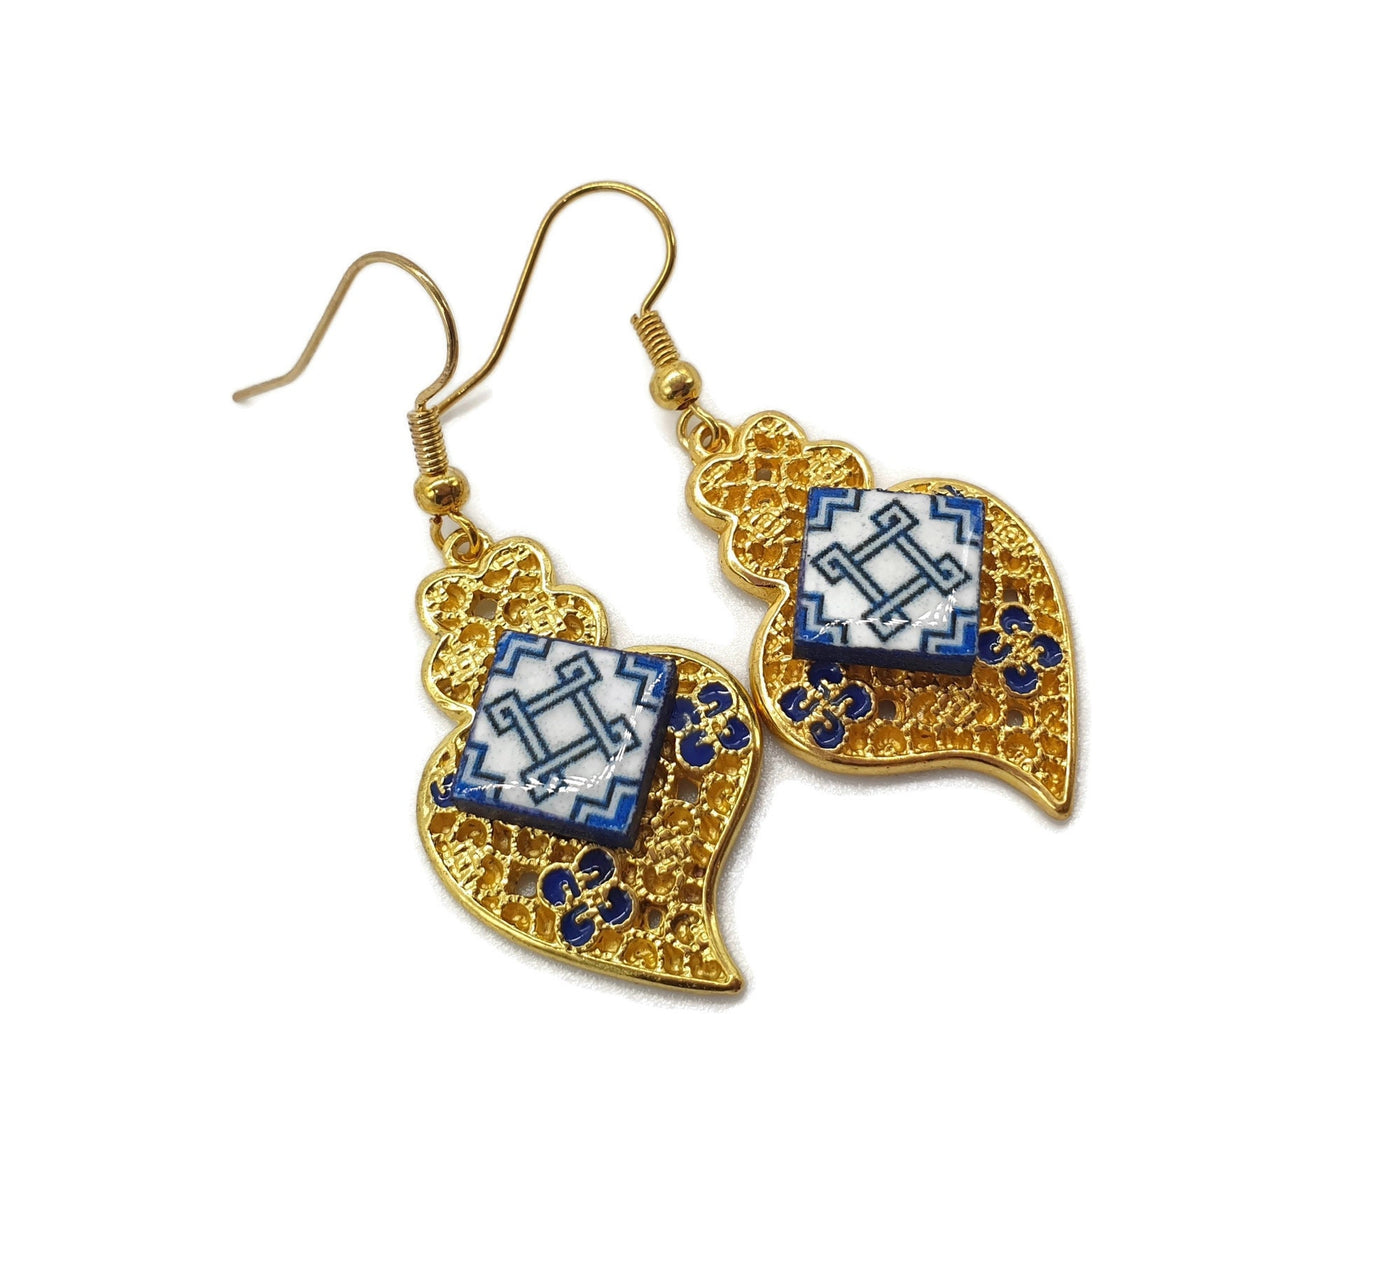 CILA - Viana Heart Gold Filigree & Tile Earrings